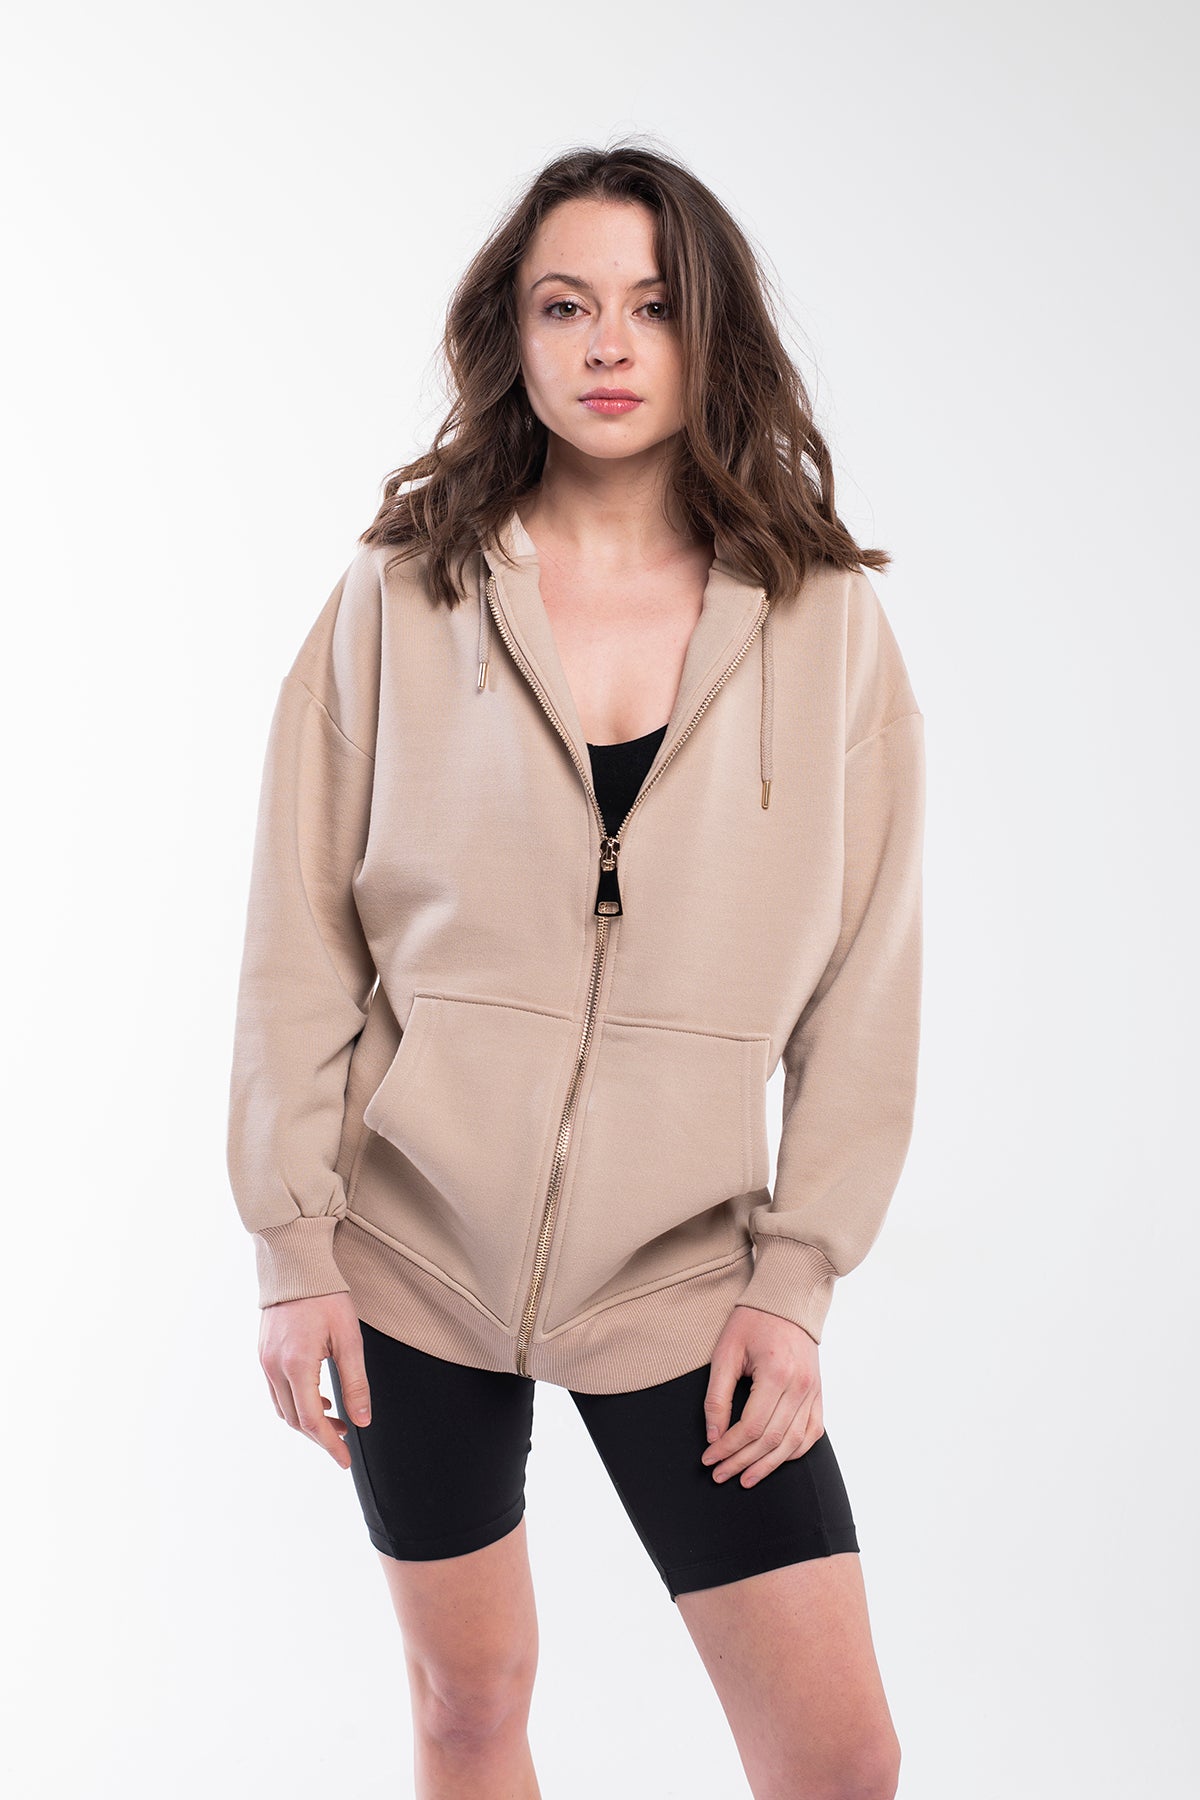 Everyday use full zip hoodie in light brown.